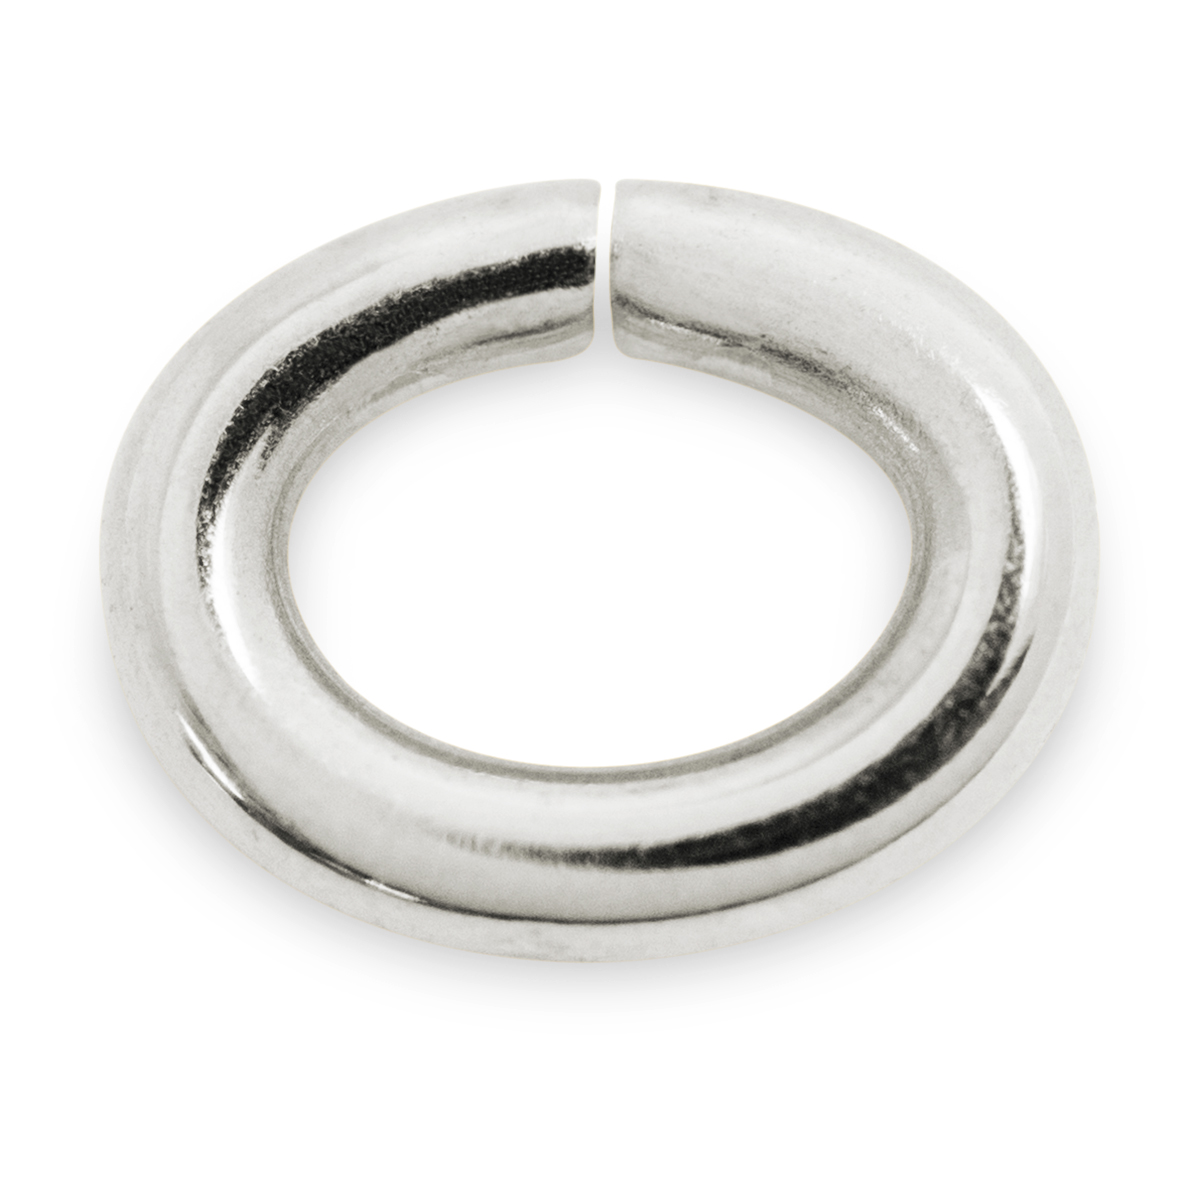 Binderinge, oval, 925/- Silber, Ø 10 mm, Stärke 1,4 mm